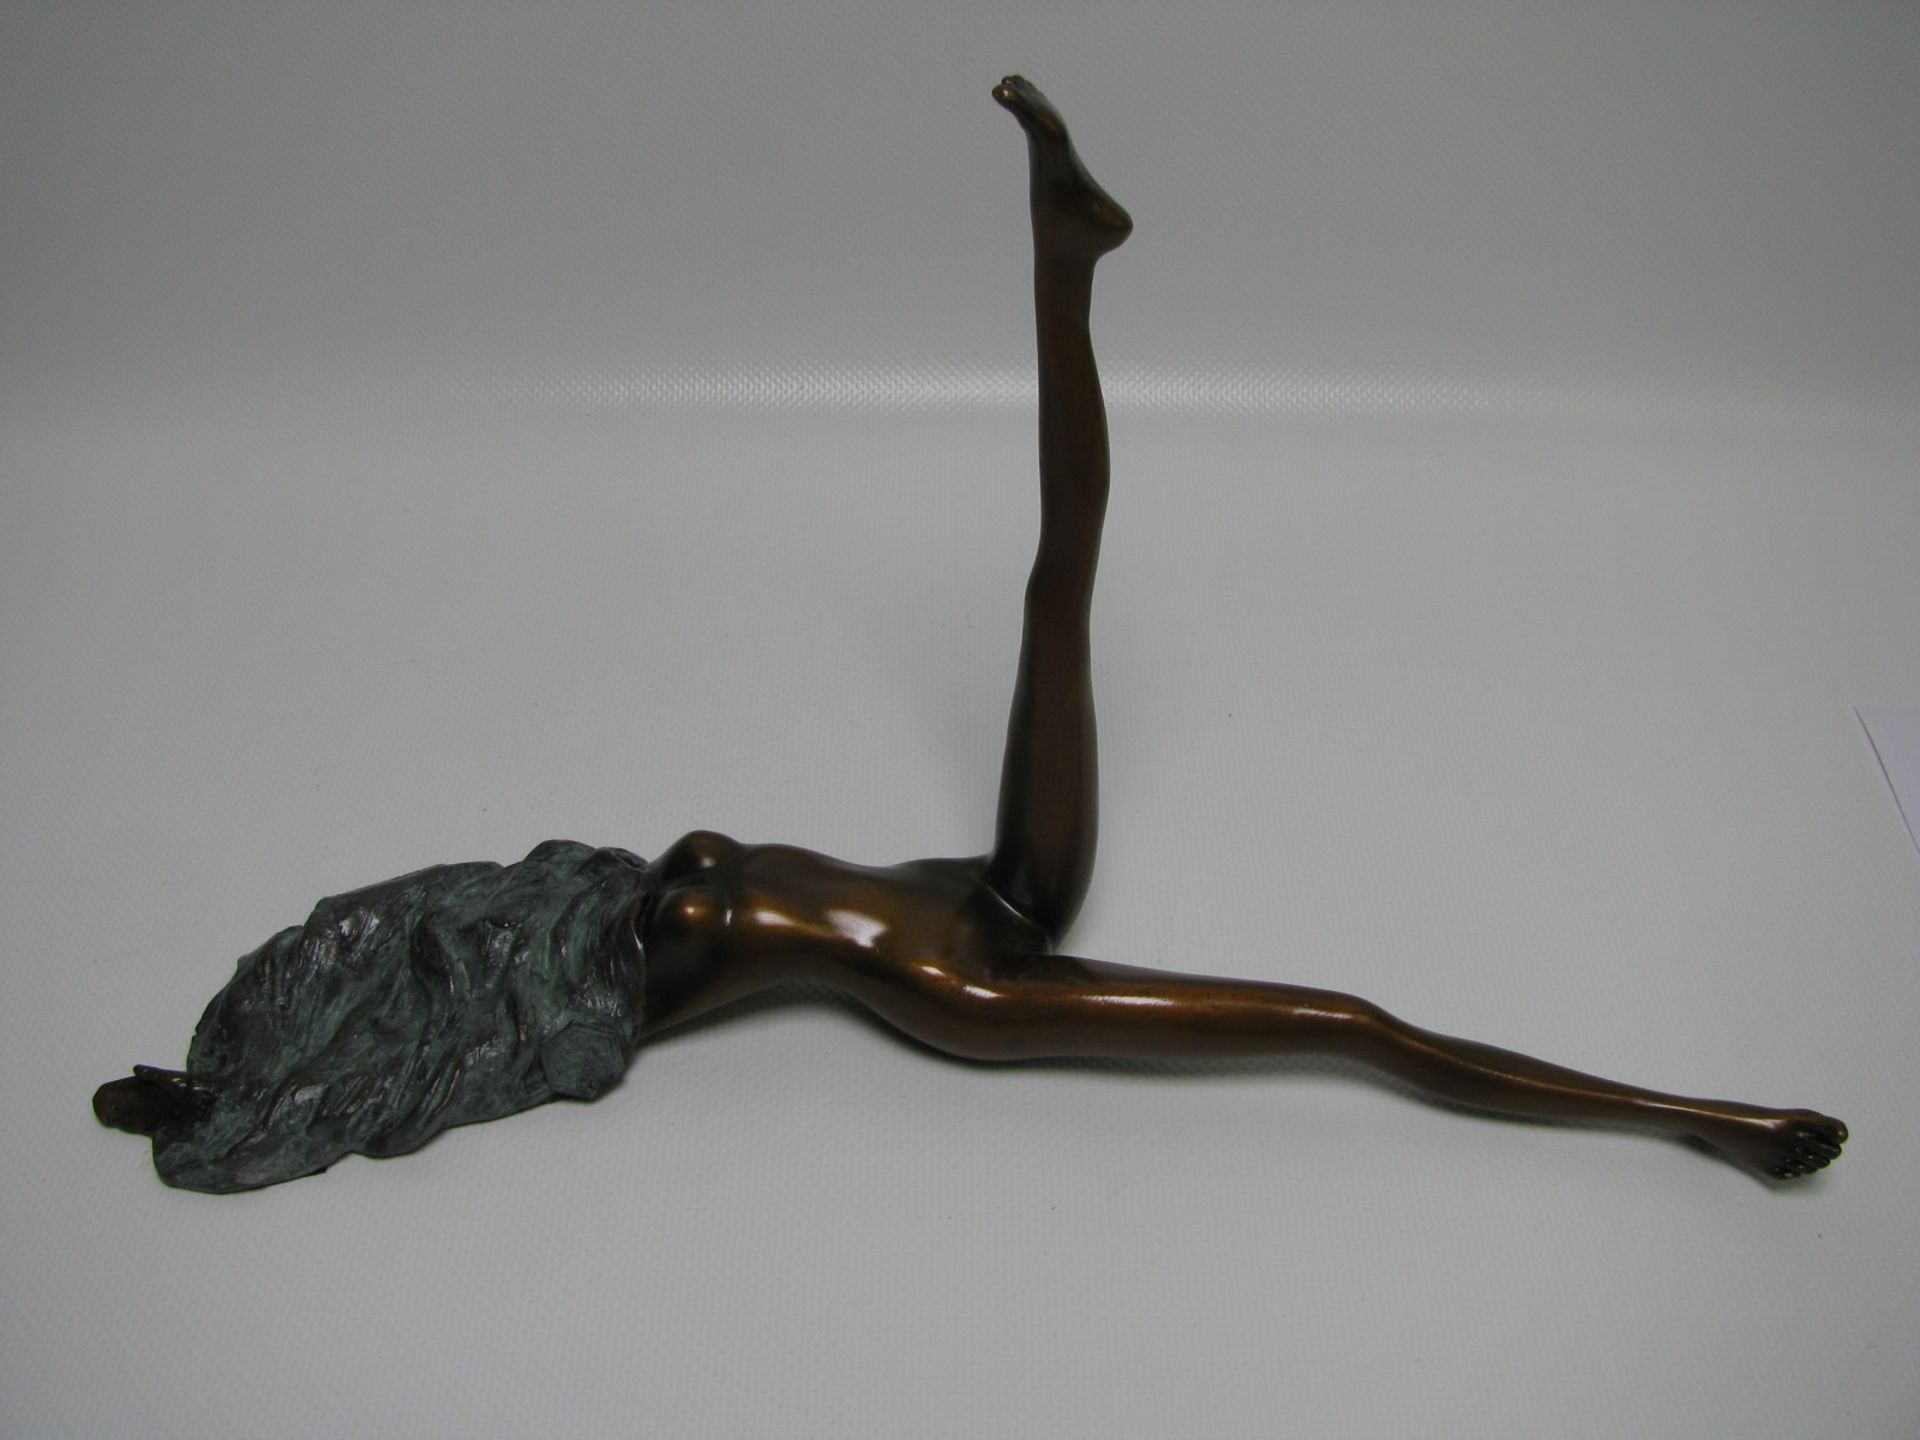 Nach Bruno Bruni, Liegende, erotische Figur, Bronze patiniert, Gießerstempel "JB Paris", 31 x 17,5 x